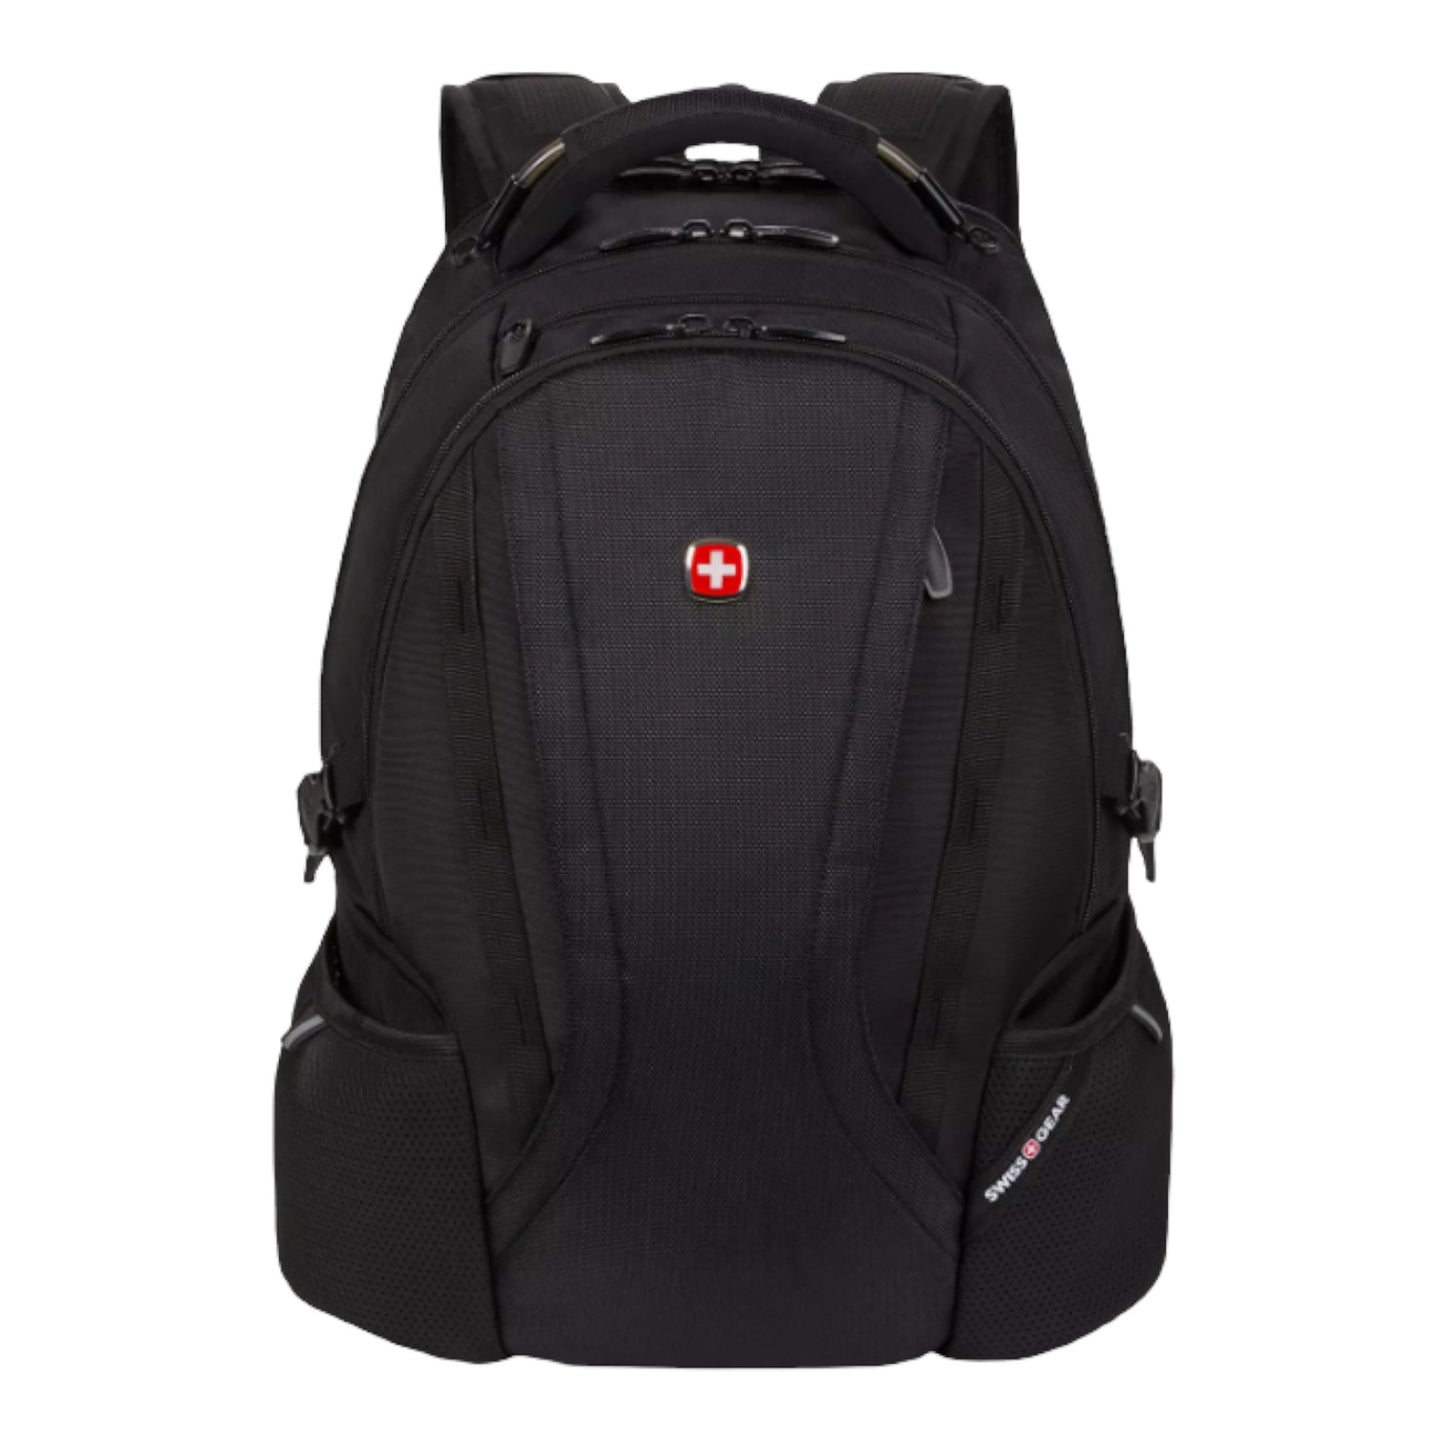 Swissgear 3760 ScanSmart Laptop Backpack - Black